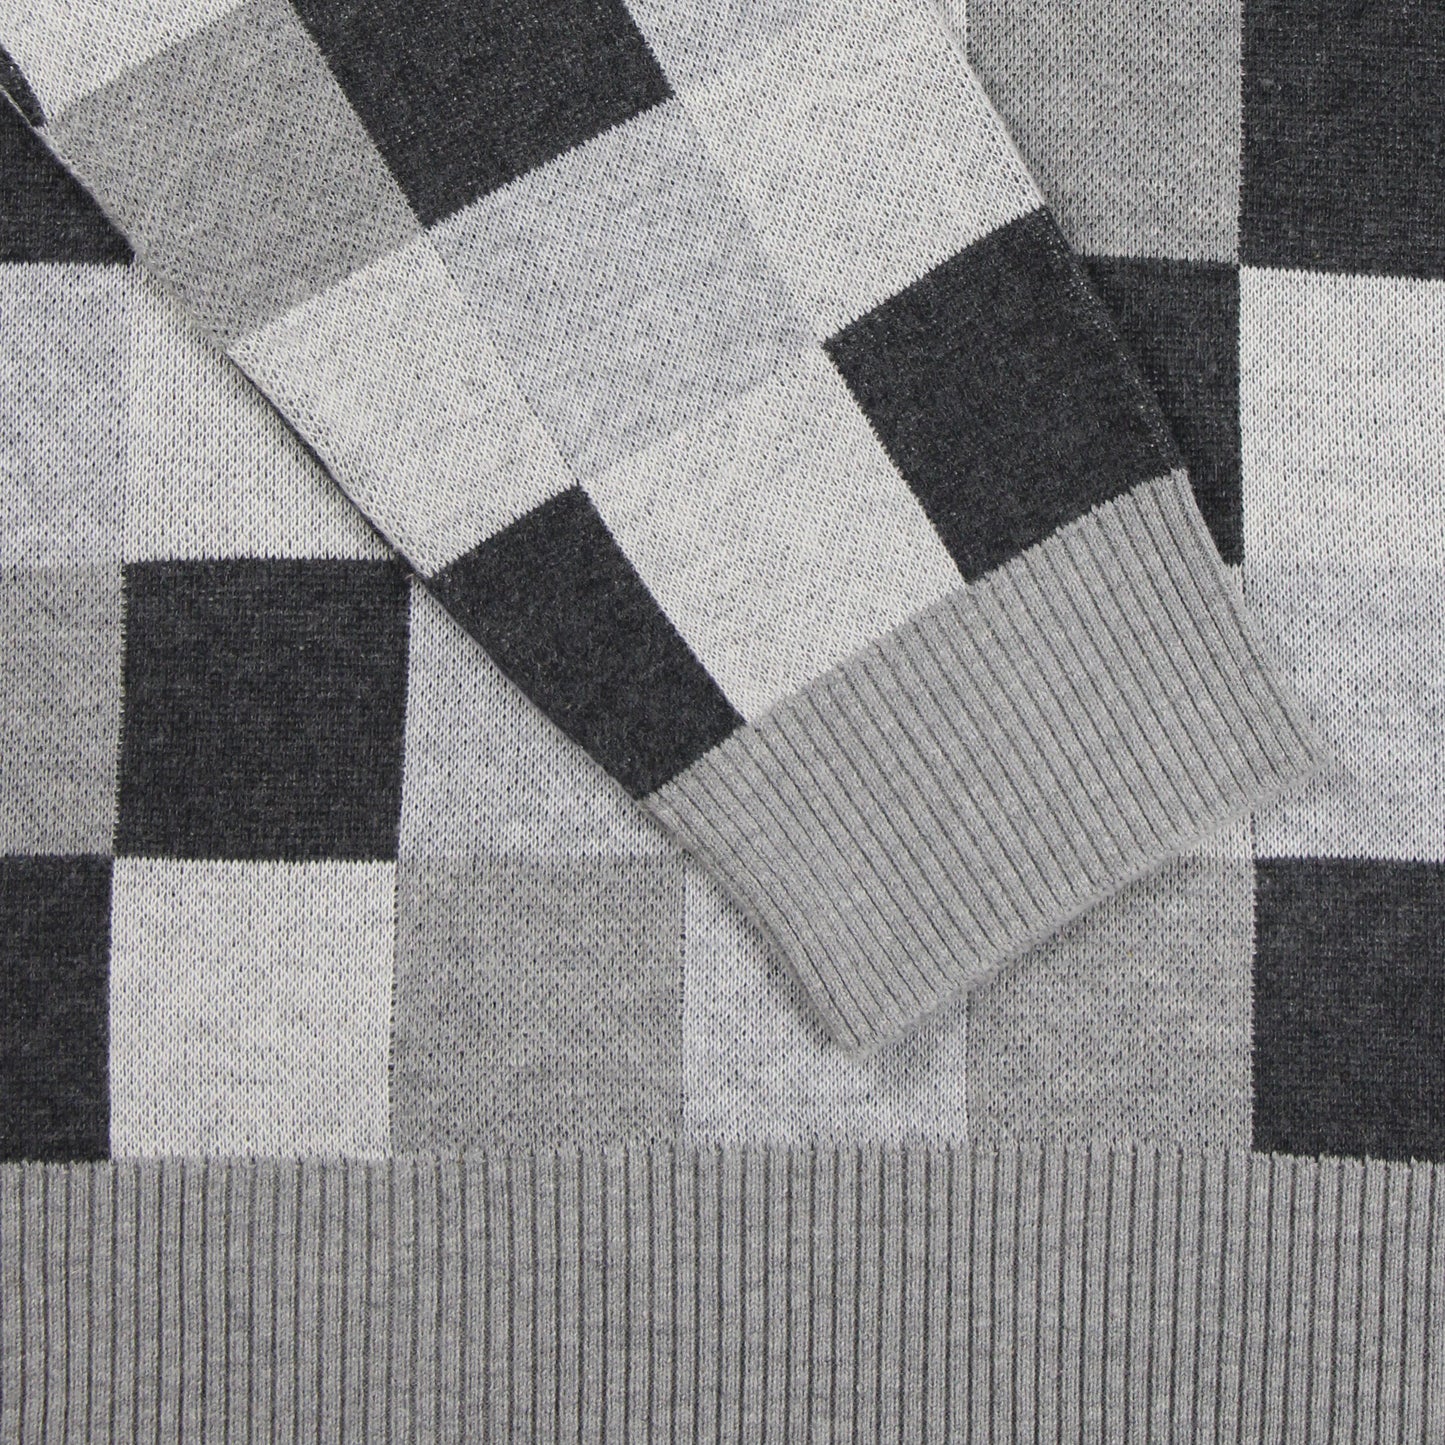 Squares [Shades of Grey]